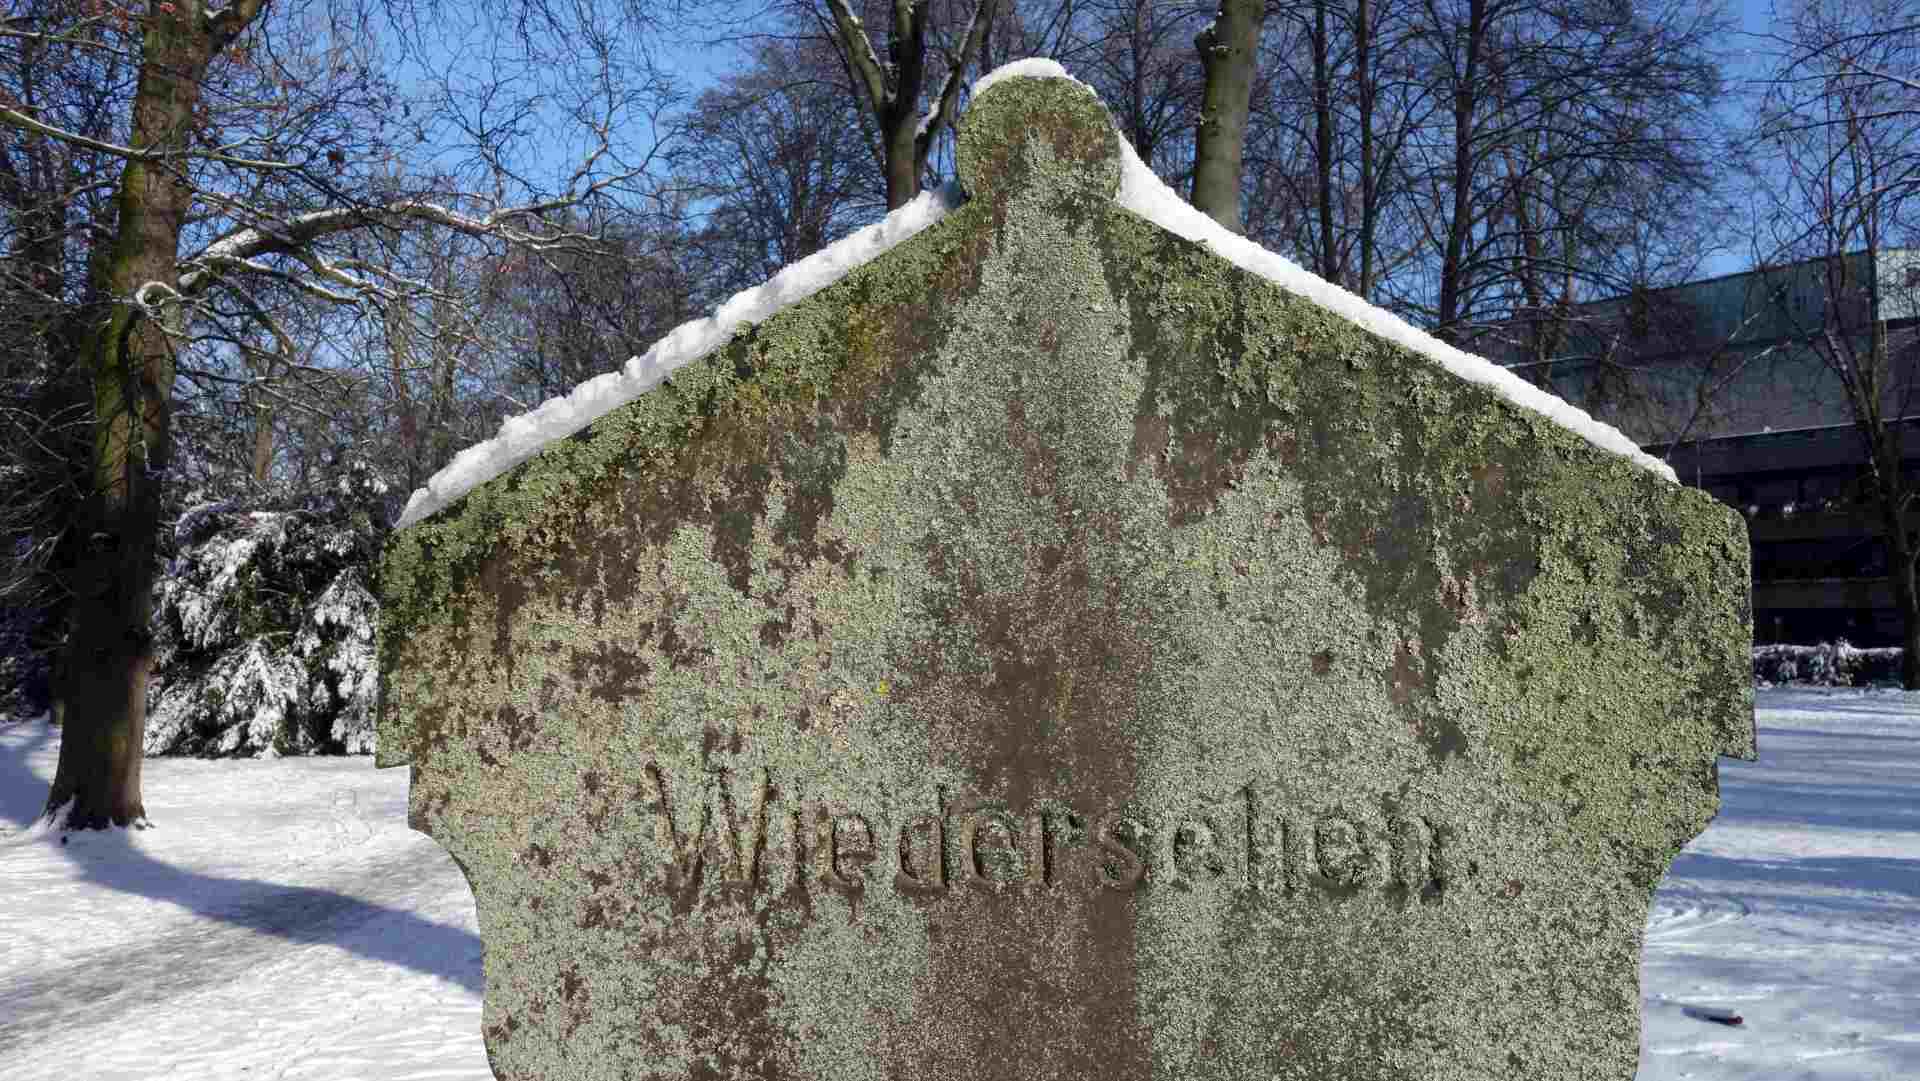 Grabstein auf dem Domfriedhof - "Auf Wiedersehen" im Jenseits